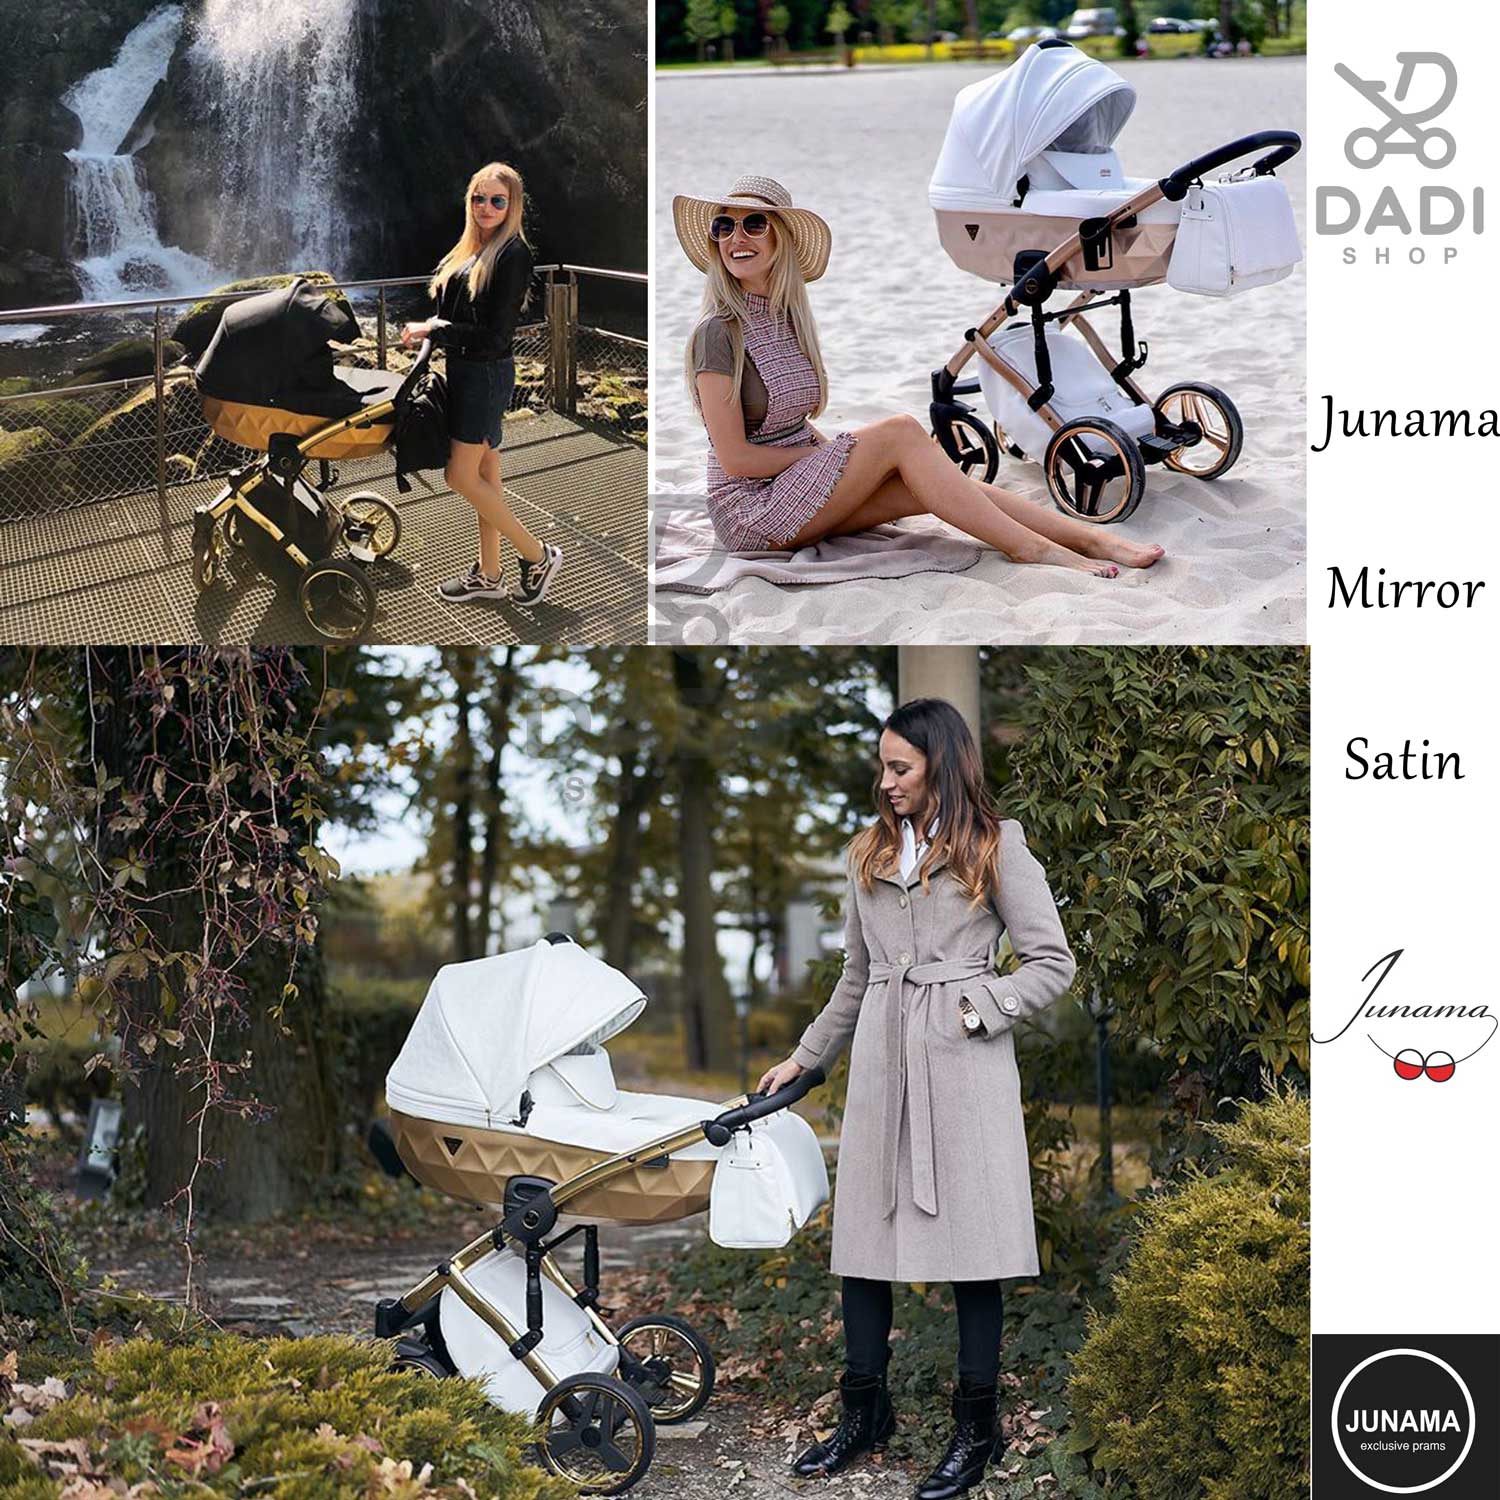 piękny wygodny wózek dziecięcy Junama Mirror Satin wieolofunkcyjny wózek Dadi Shop